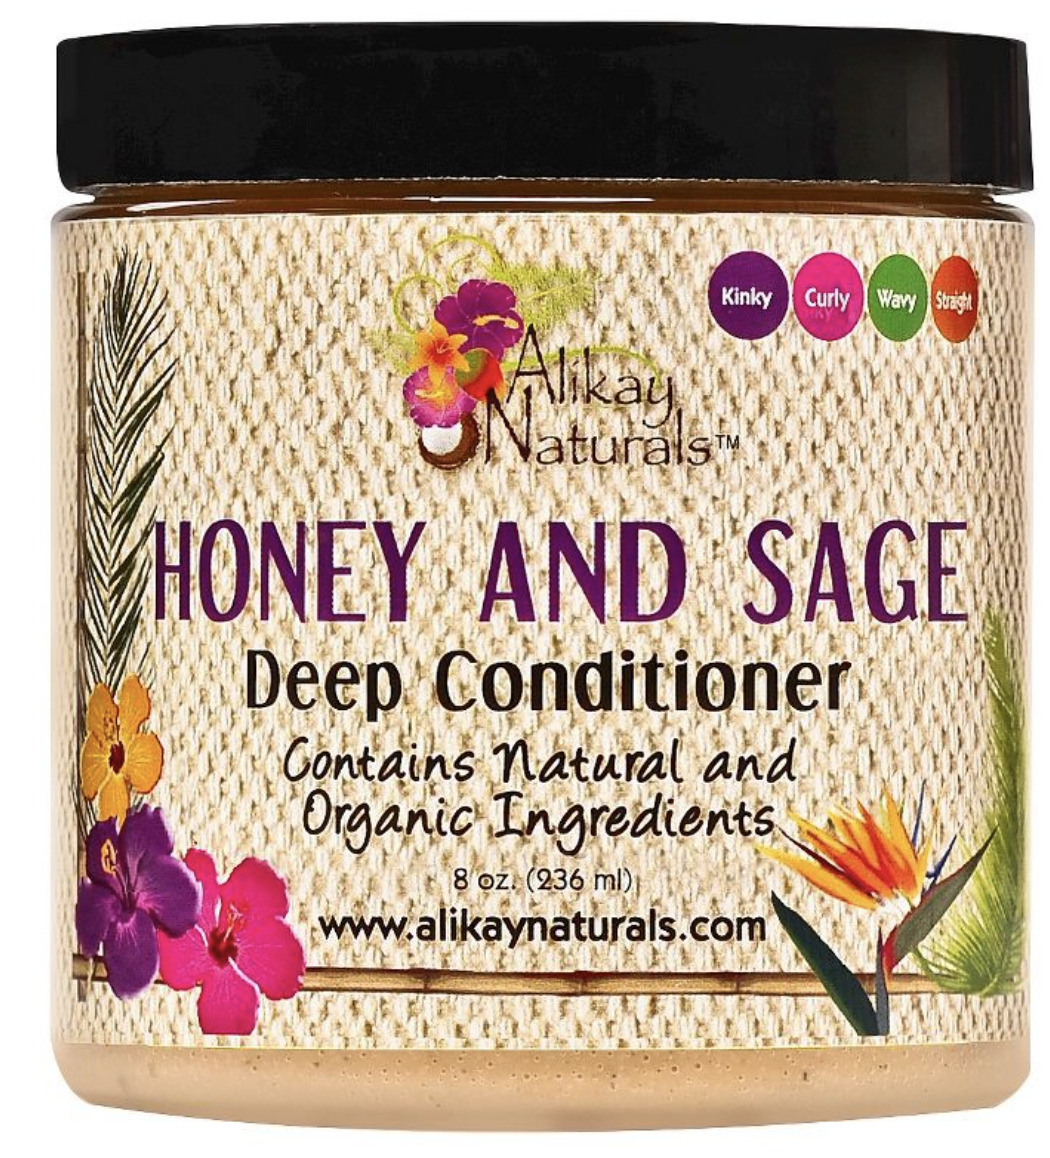 Alkilay Naturals Honey & Sage Deep Conditioner